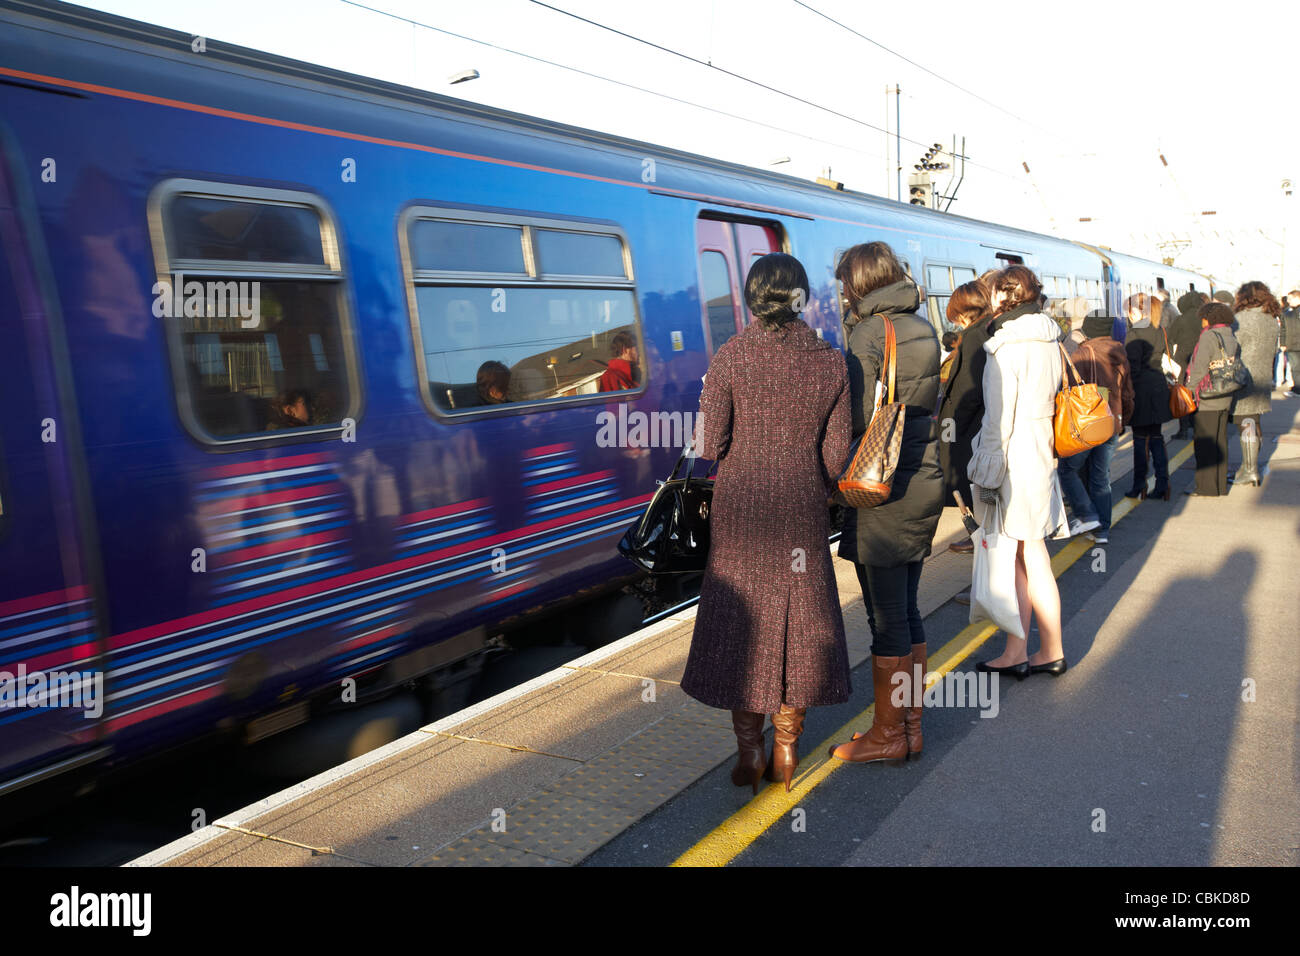 Les gens qui attendent à l'arrivée du train à la gare ferroviaire de cricklewood London England Royaume-Uni uk Banque D'Images